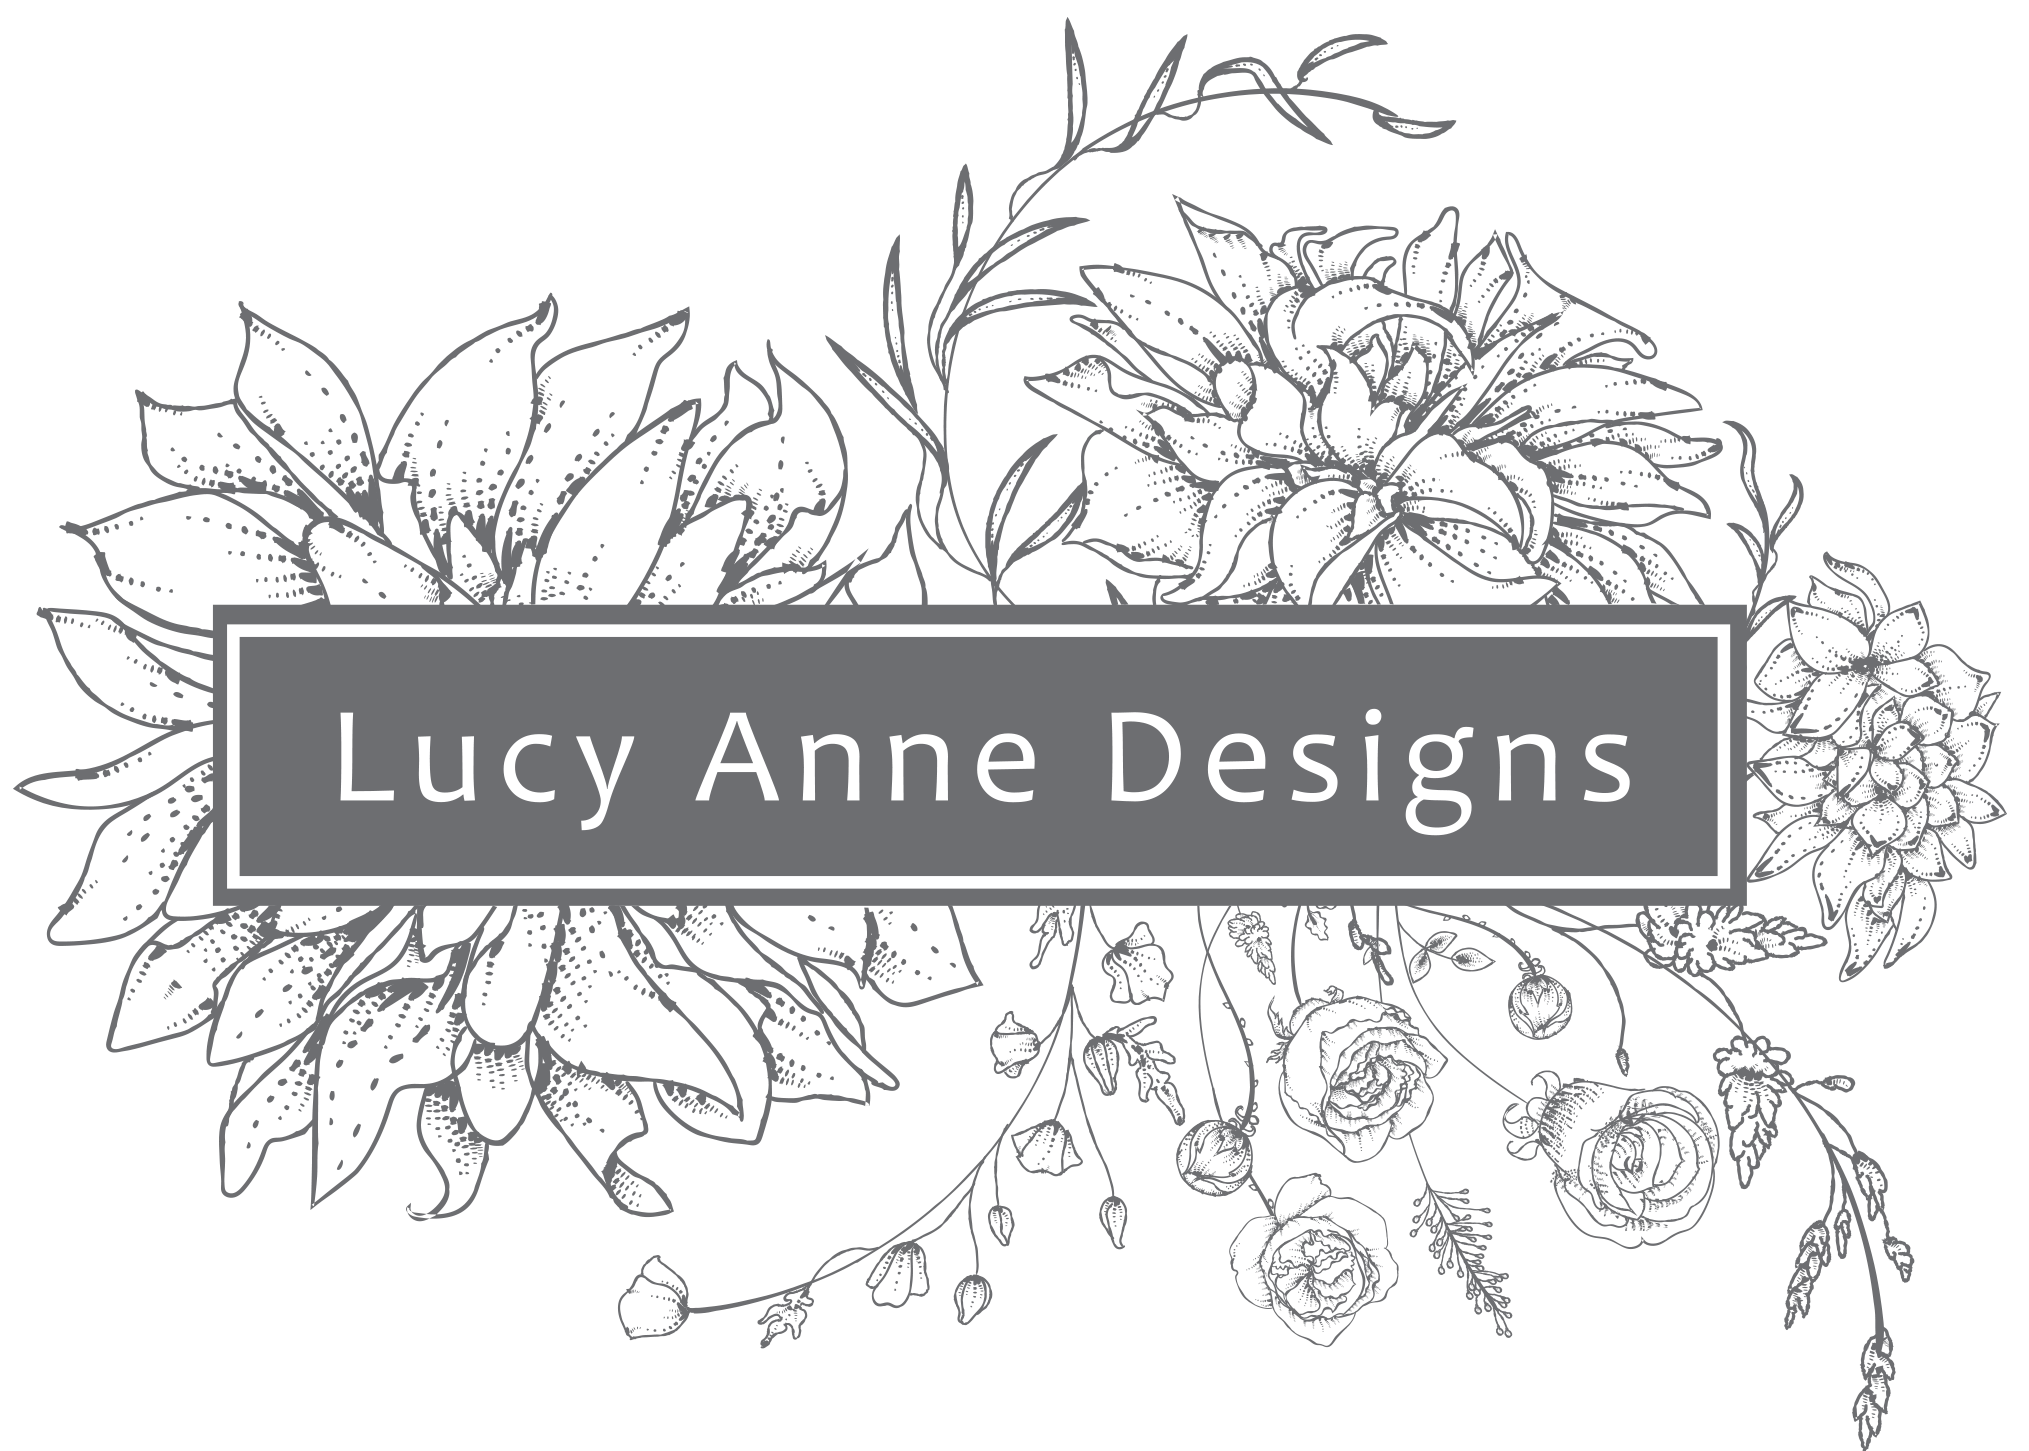 Lucy Anne Designs Lucy Anne Designs